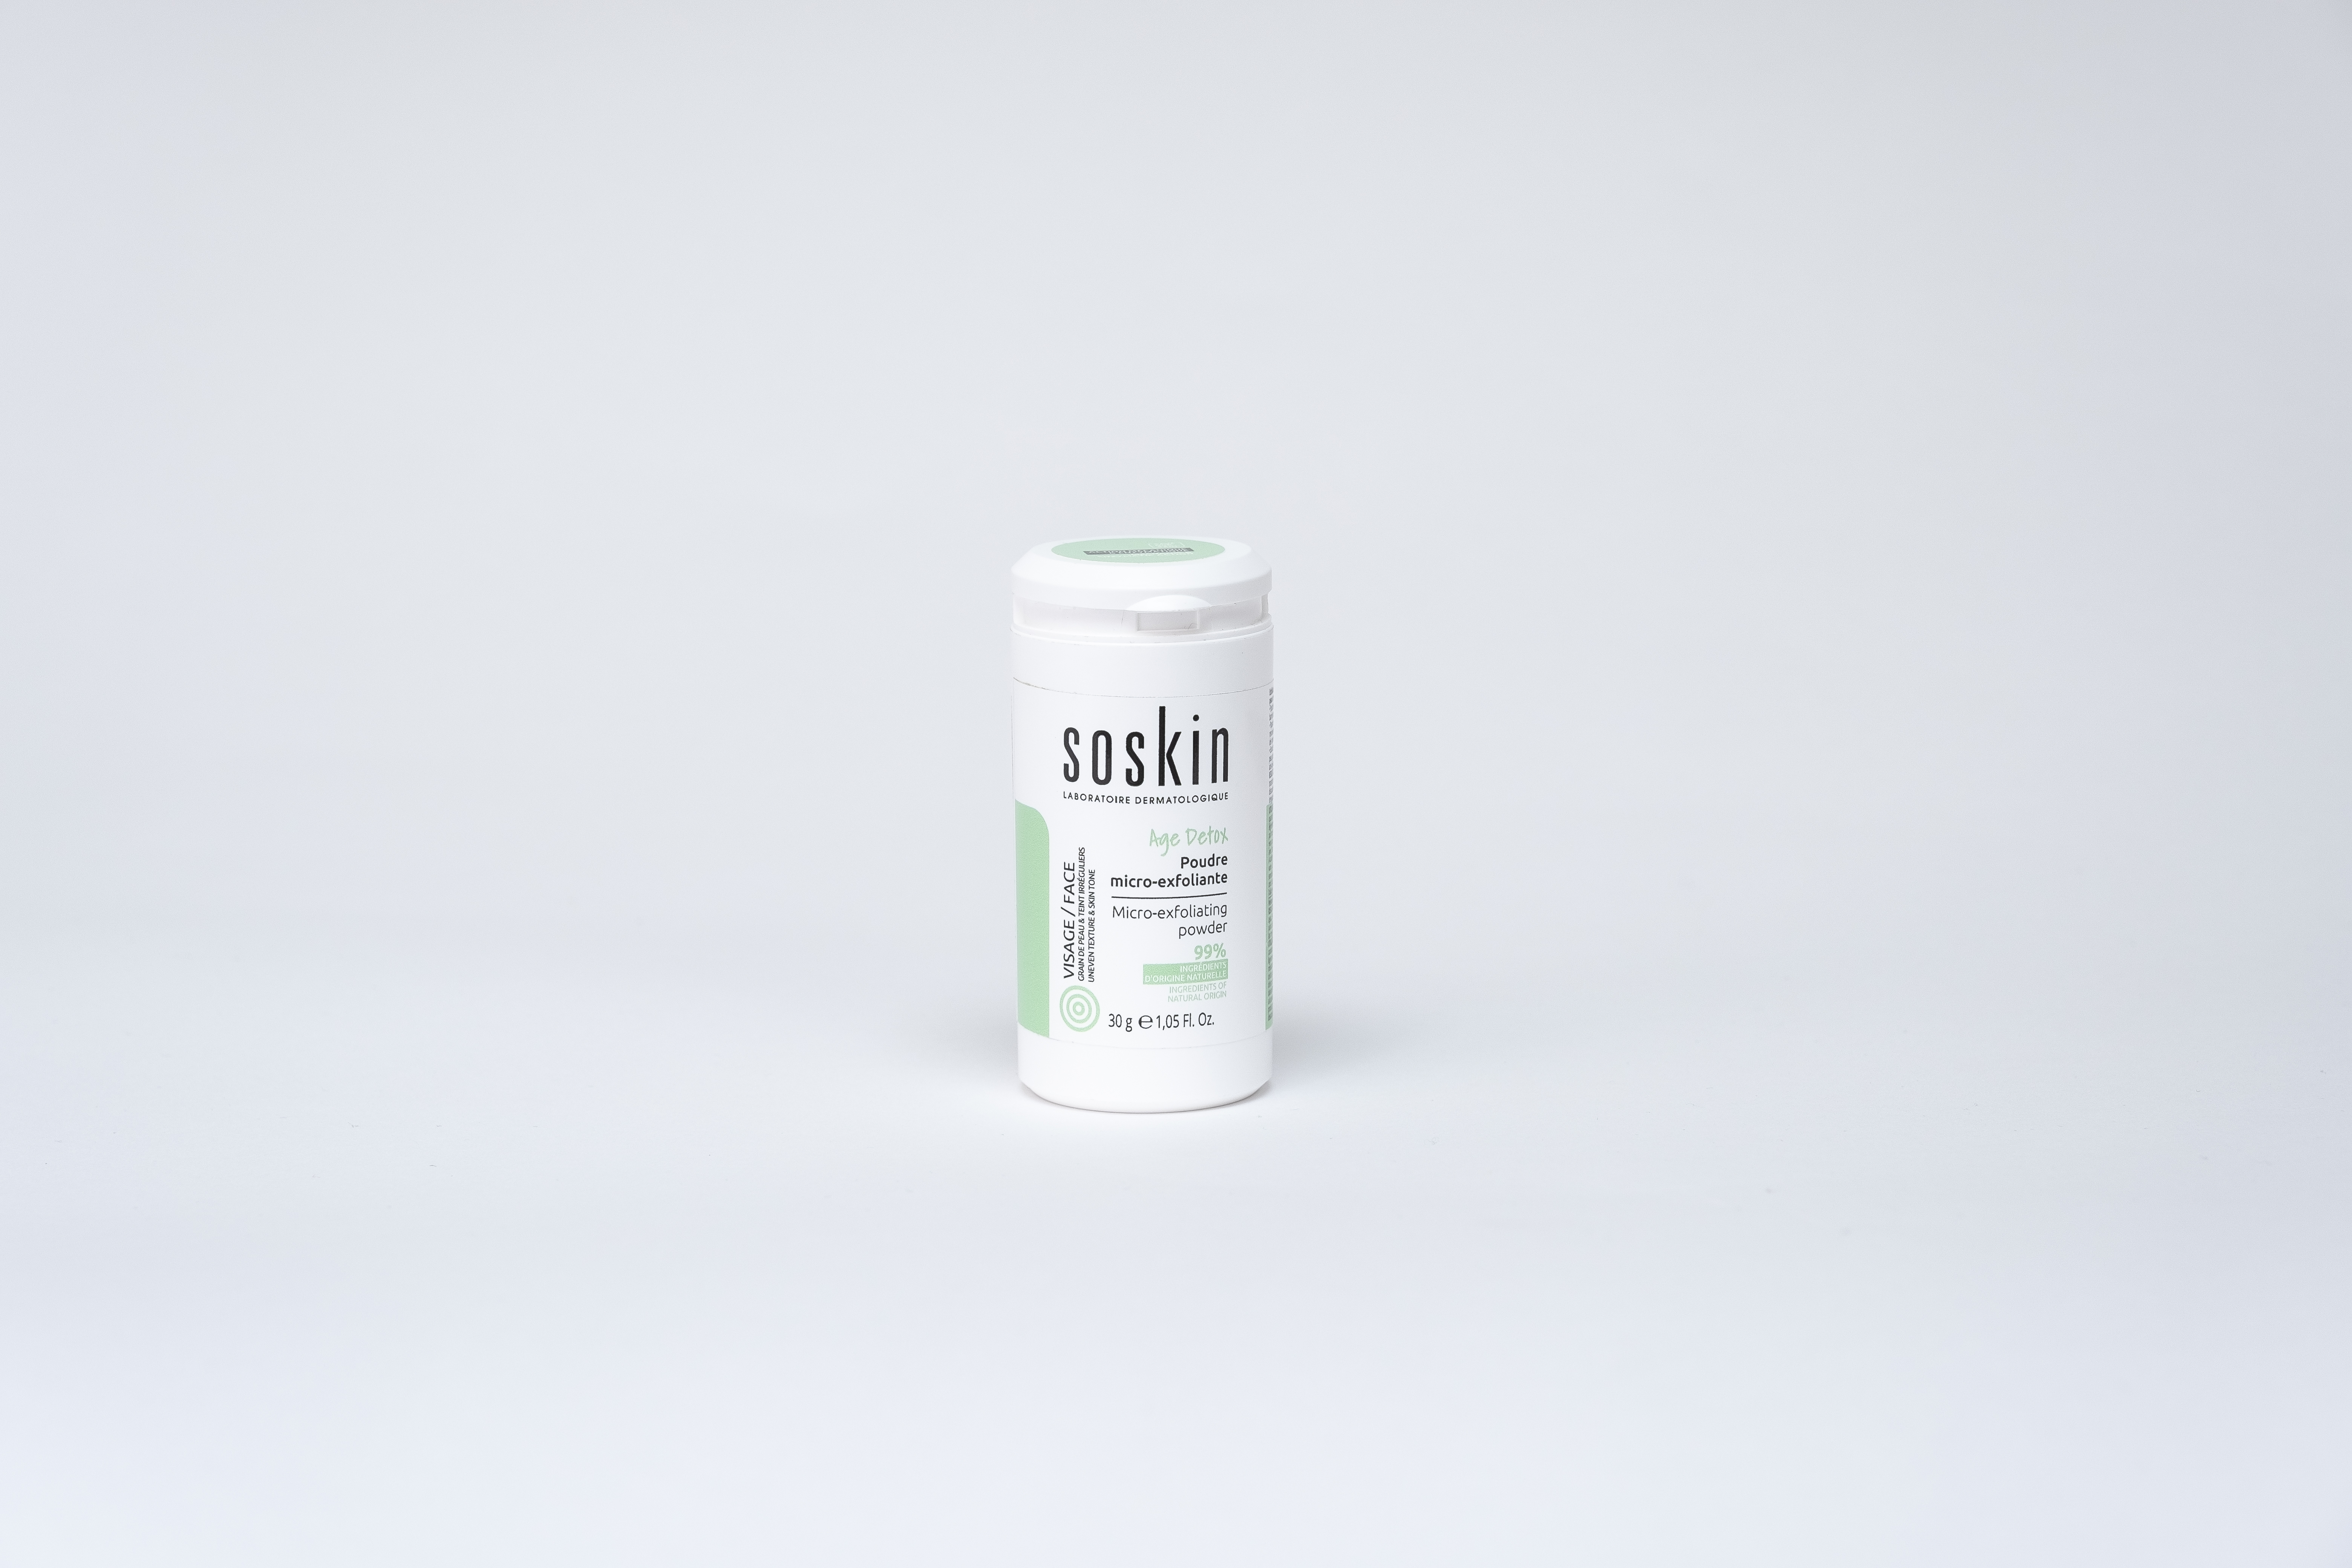 Soskin-Paris Micro-exfoliating powder